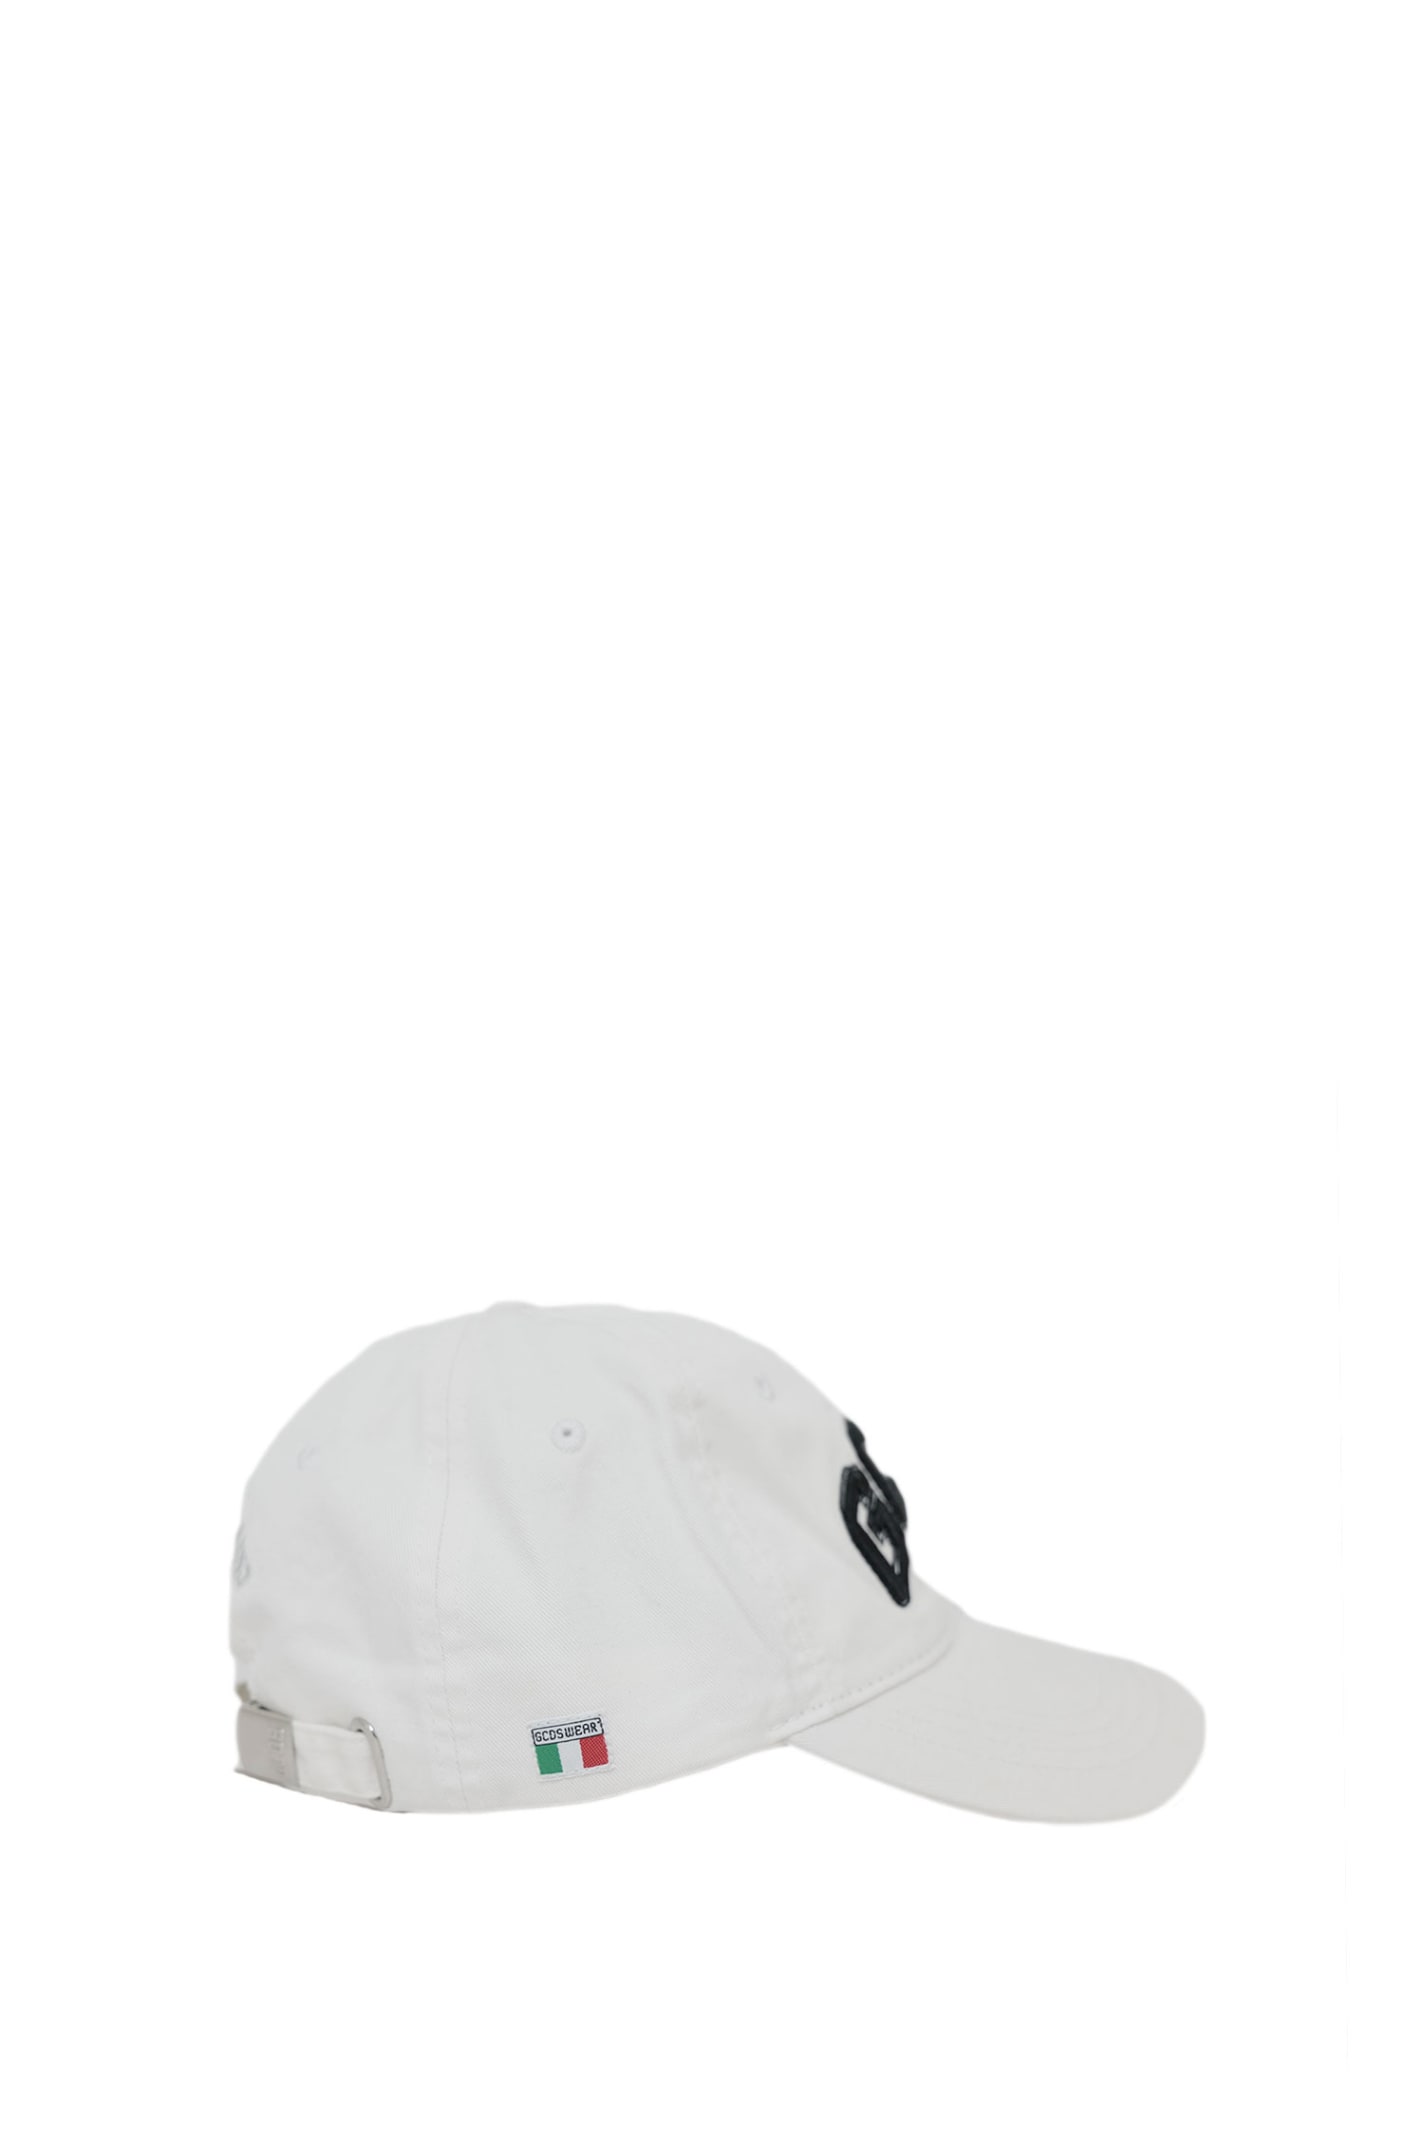 Shop Gcds Hat In White